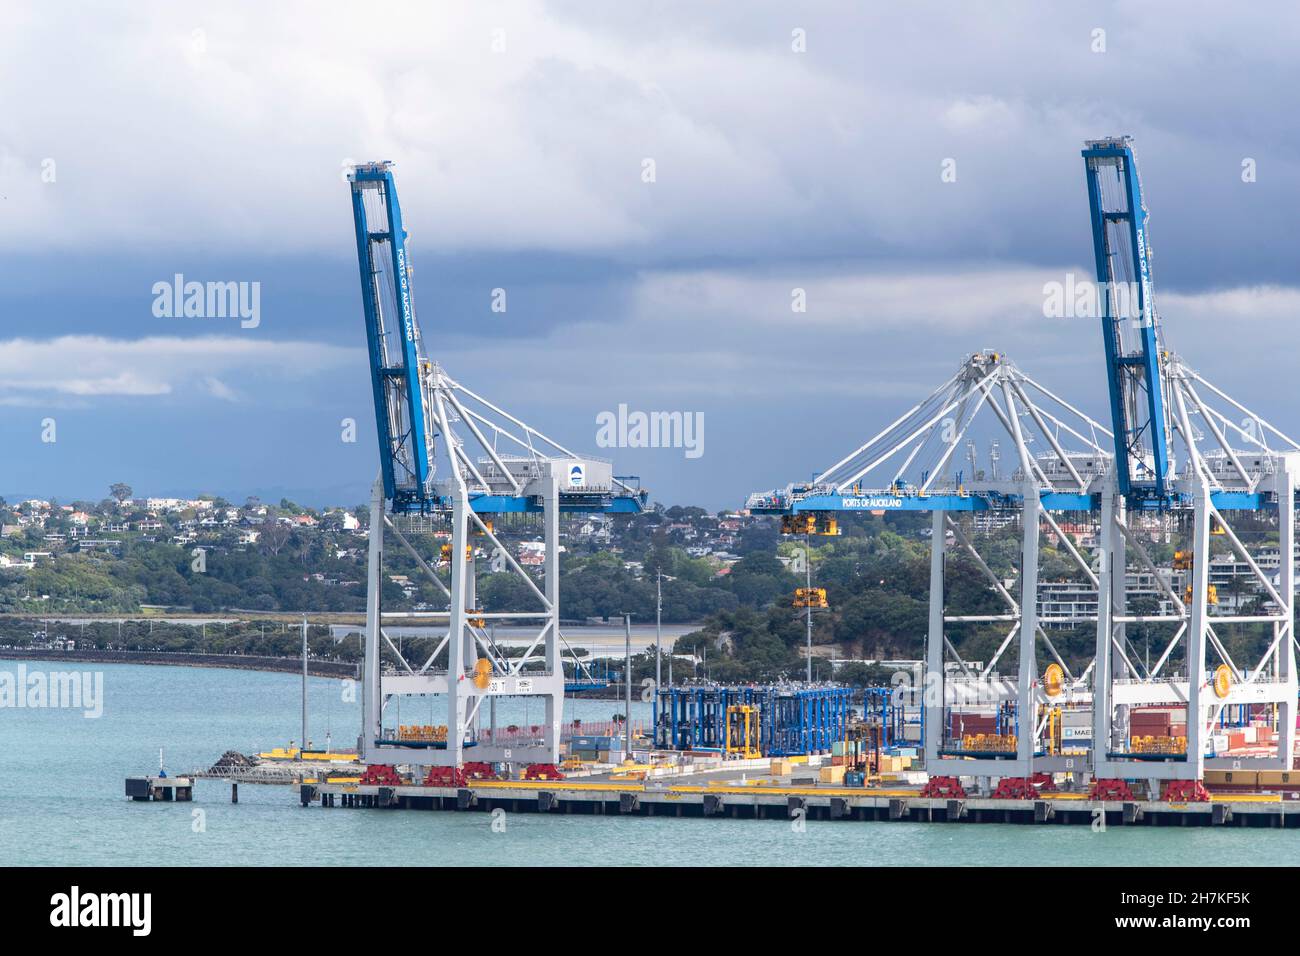 Krane in den Häfen von Auckland, Neuseeland, am Dienstag, den 22. November 2021. Foto: David Rowland / One-Image.com Stockfoto